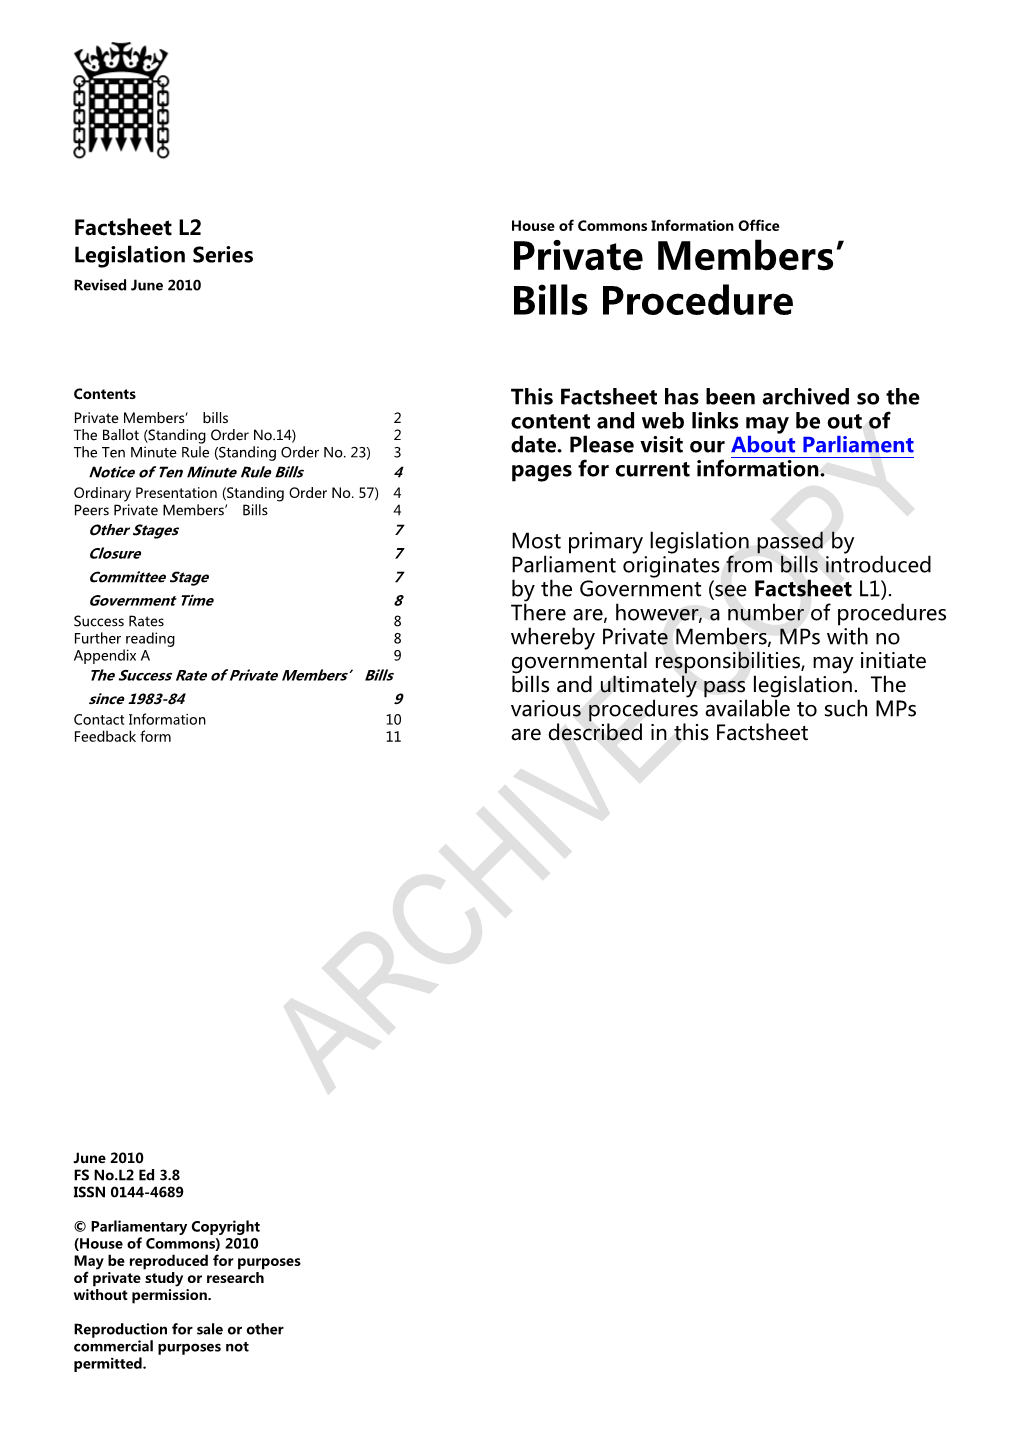 Private Members' Bills Procedure